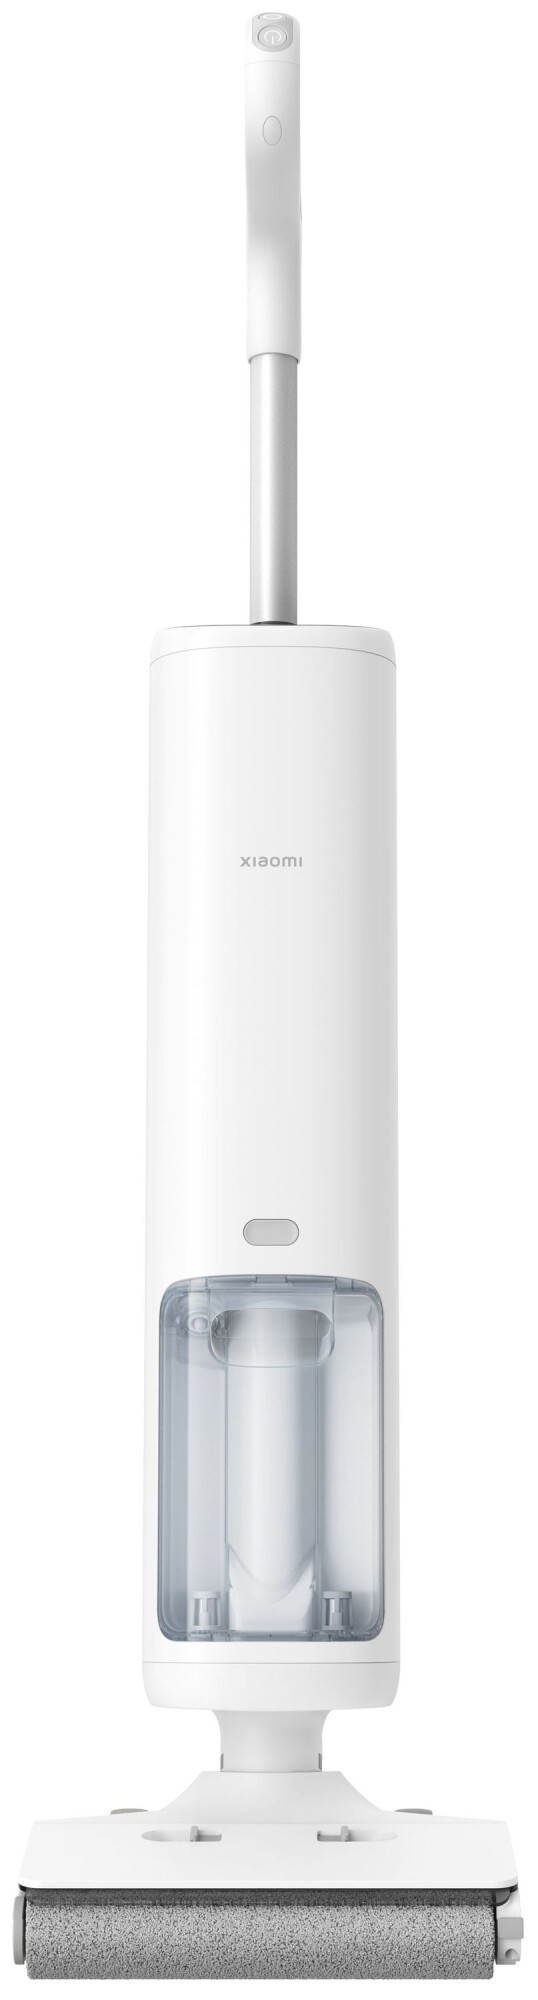 Пылесос для сбора воды Xiaomi Truclean W10 Pro Wet Dry Vacuum EU